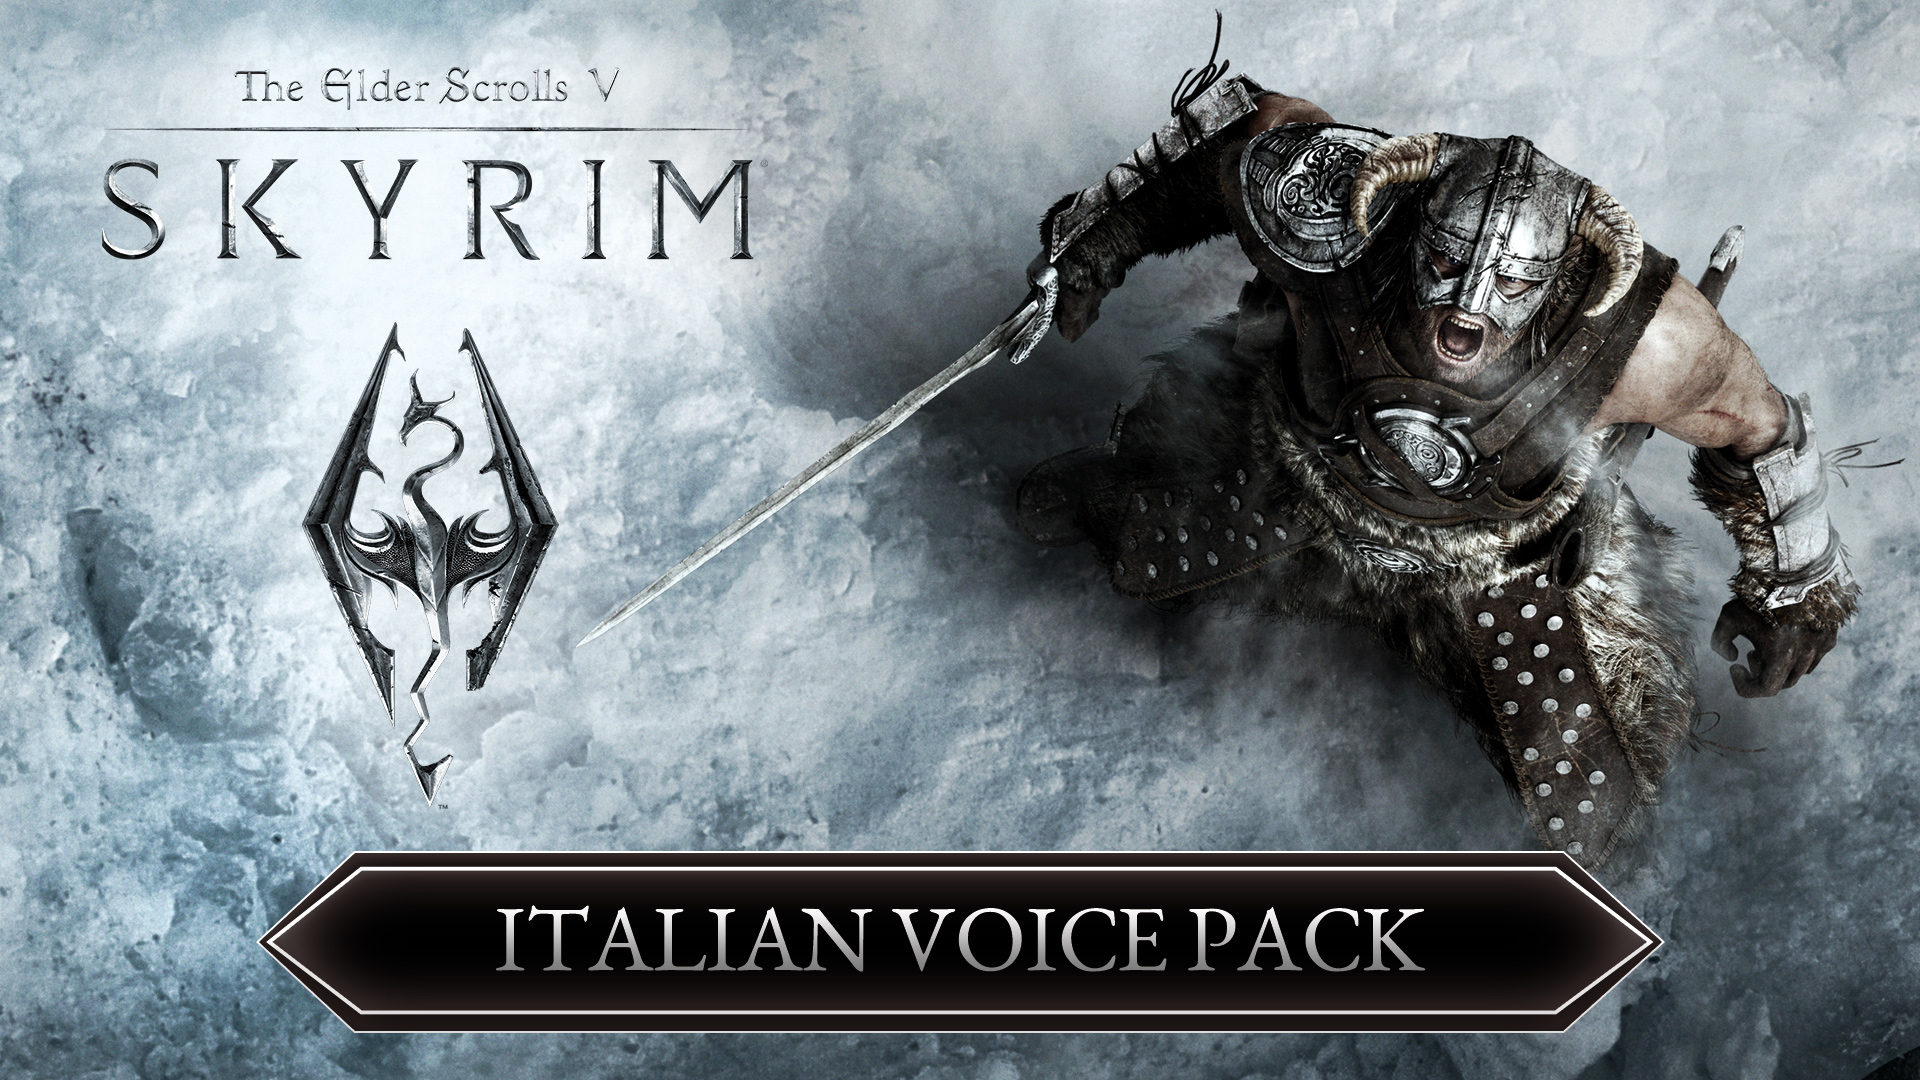 The Elder Scrolls V: Skyrim Italian Voice Pack 